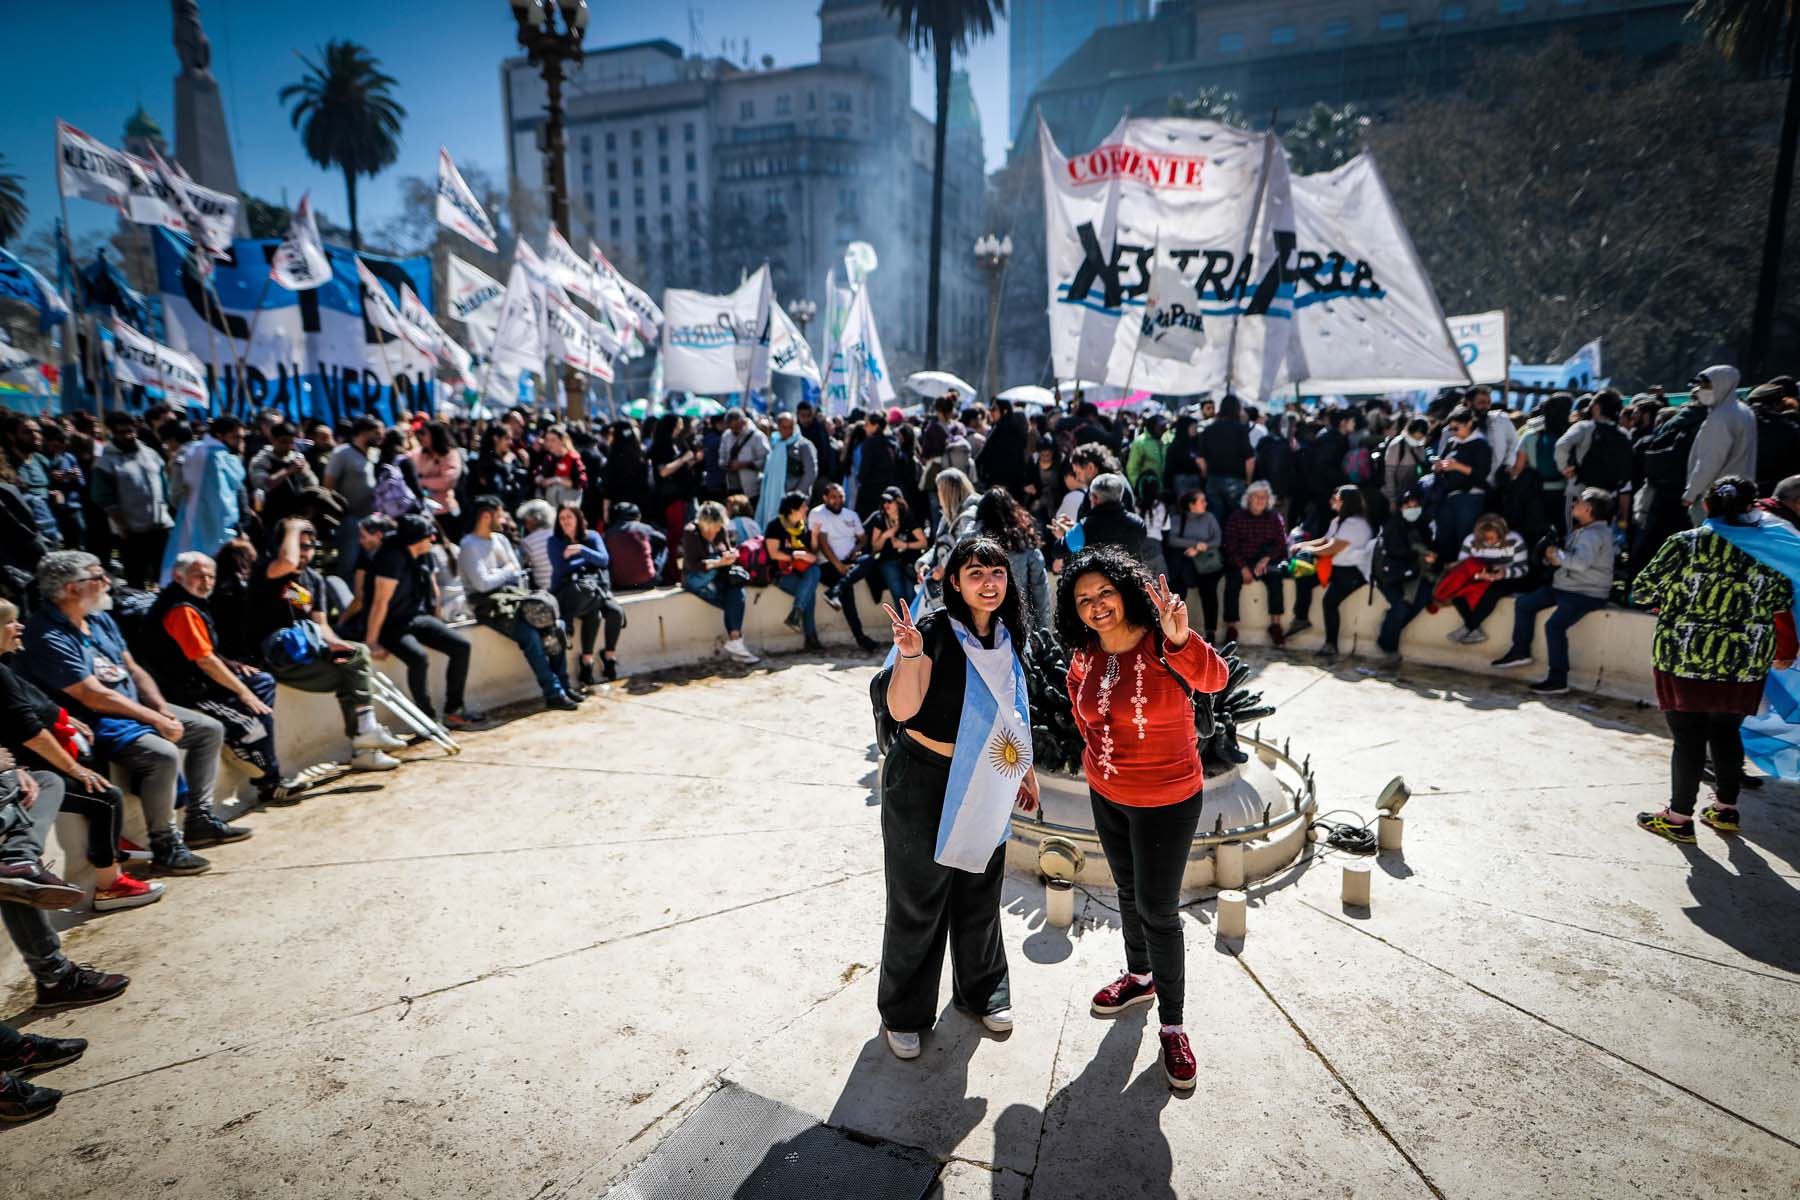 Miles de simpatizantes de Cristina Fernández de Kirchner participan hoy en una movilización en su defensa tras el atentado en su contra, en la Plaza de Mayo en Buenos Aires. Foto: EFE